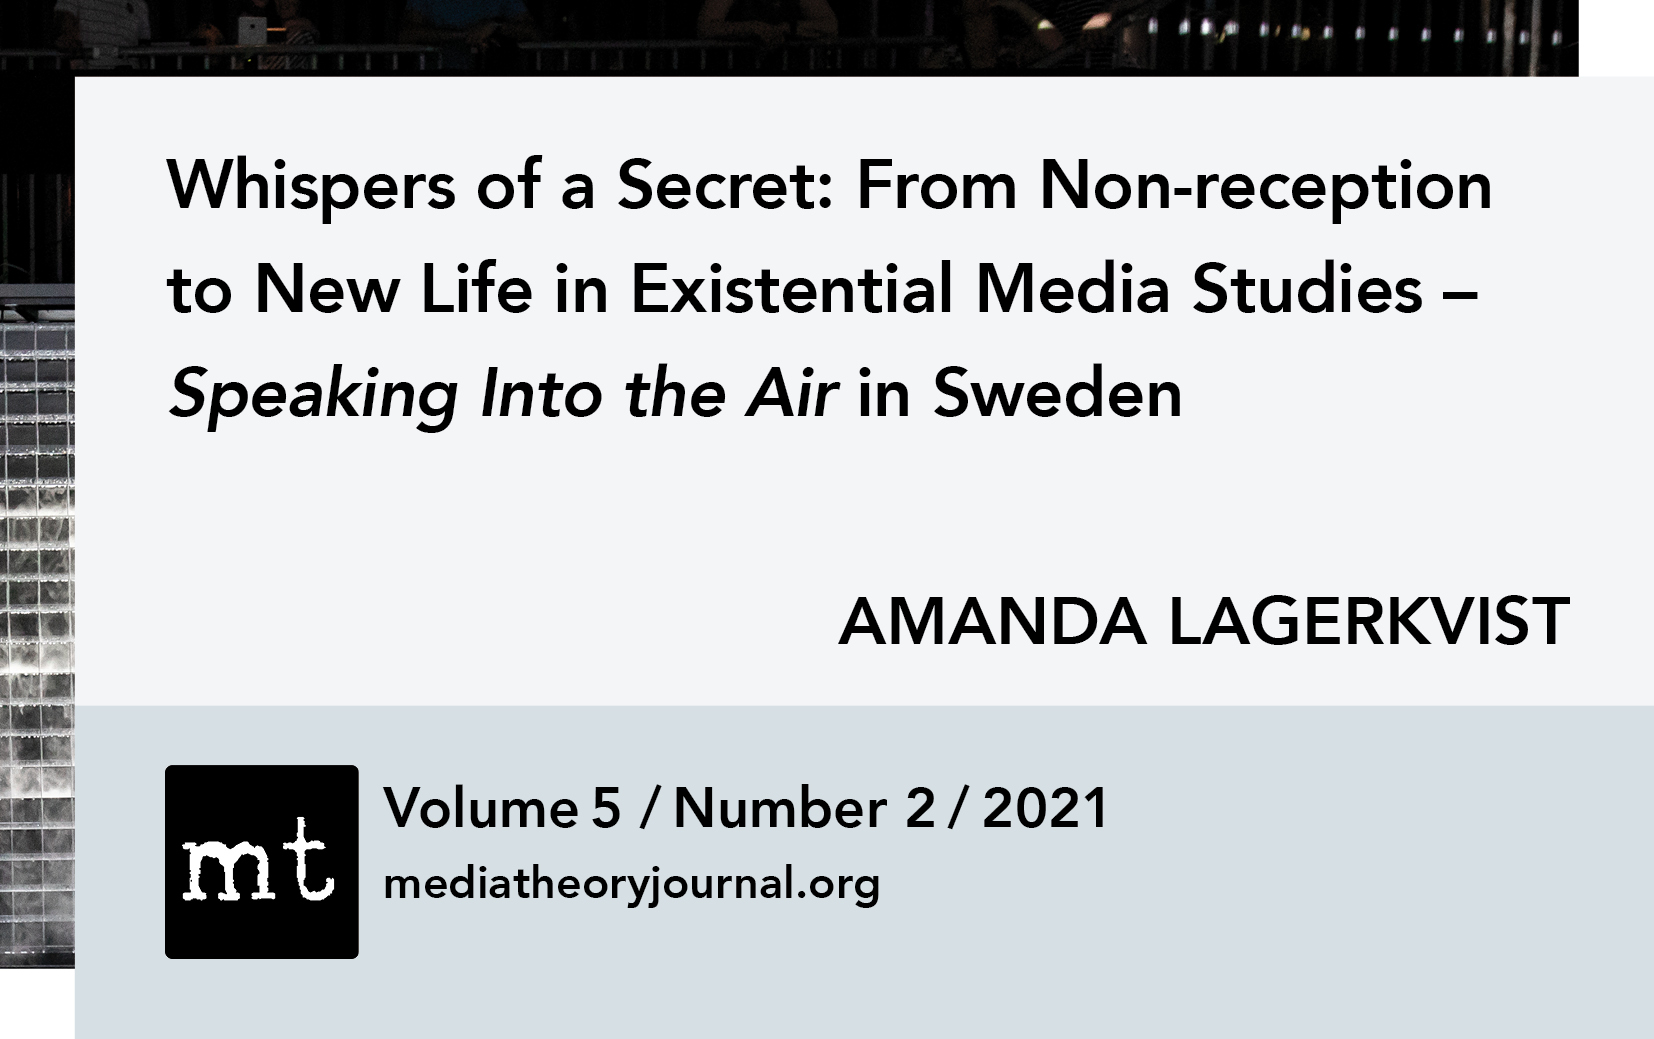 Amanda Lagerkvist: Whispers of a Secret